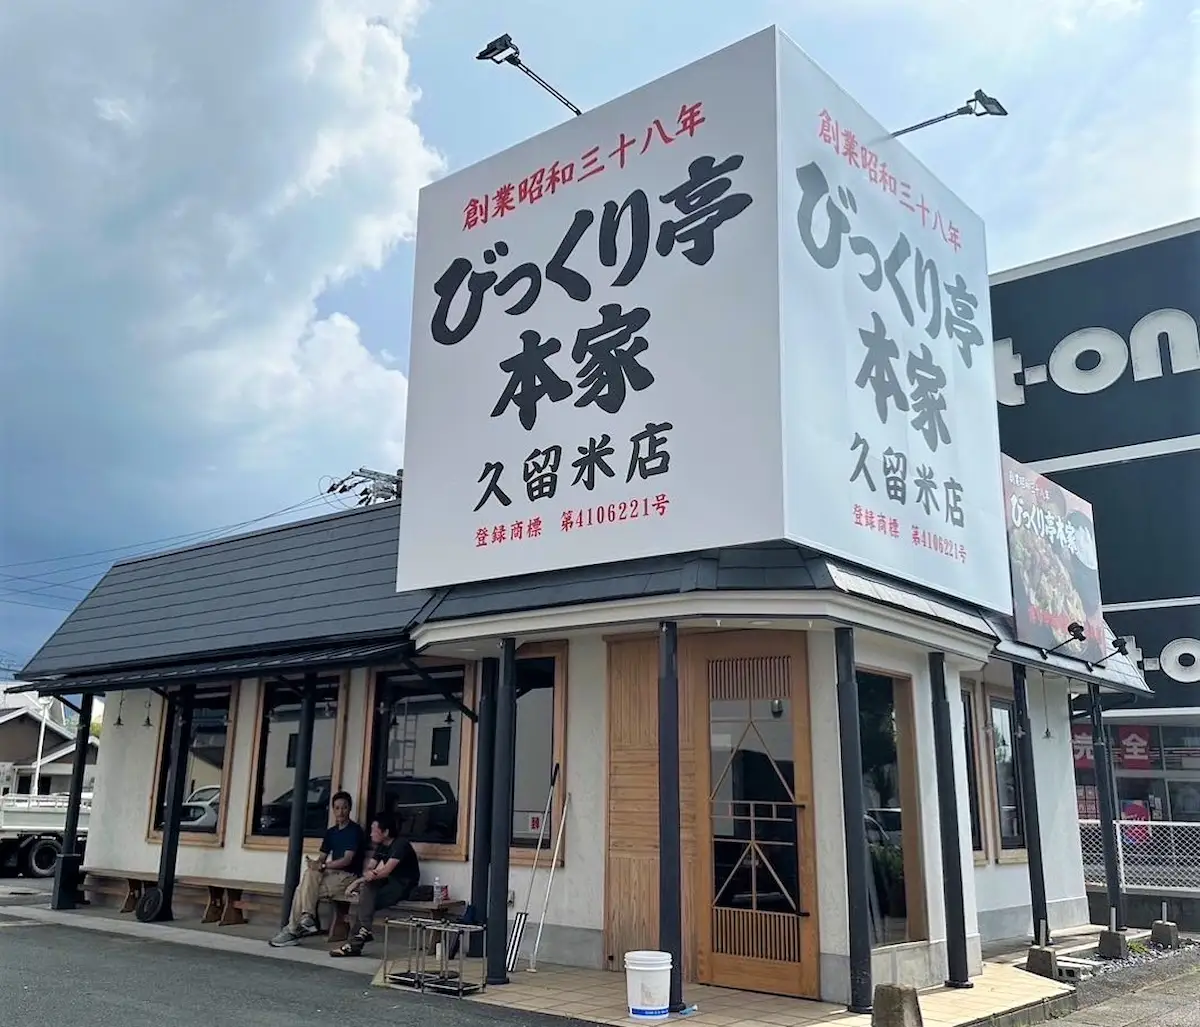 びっくり亭本家 久留米店が8月4日にオープンするみたい。焼肉鉄板と辛味噌発祥の店